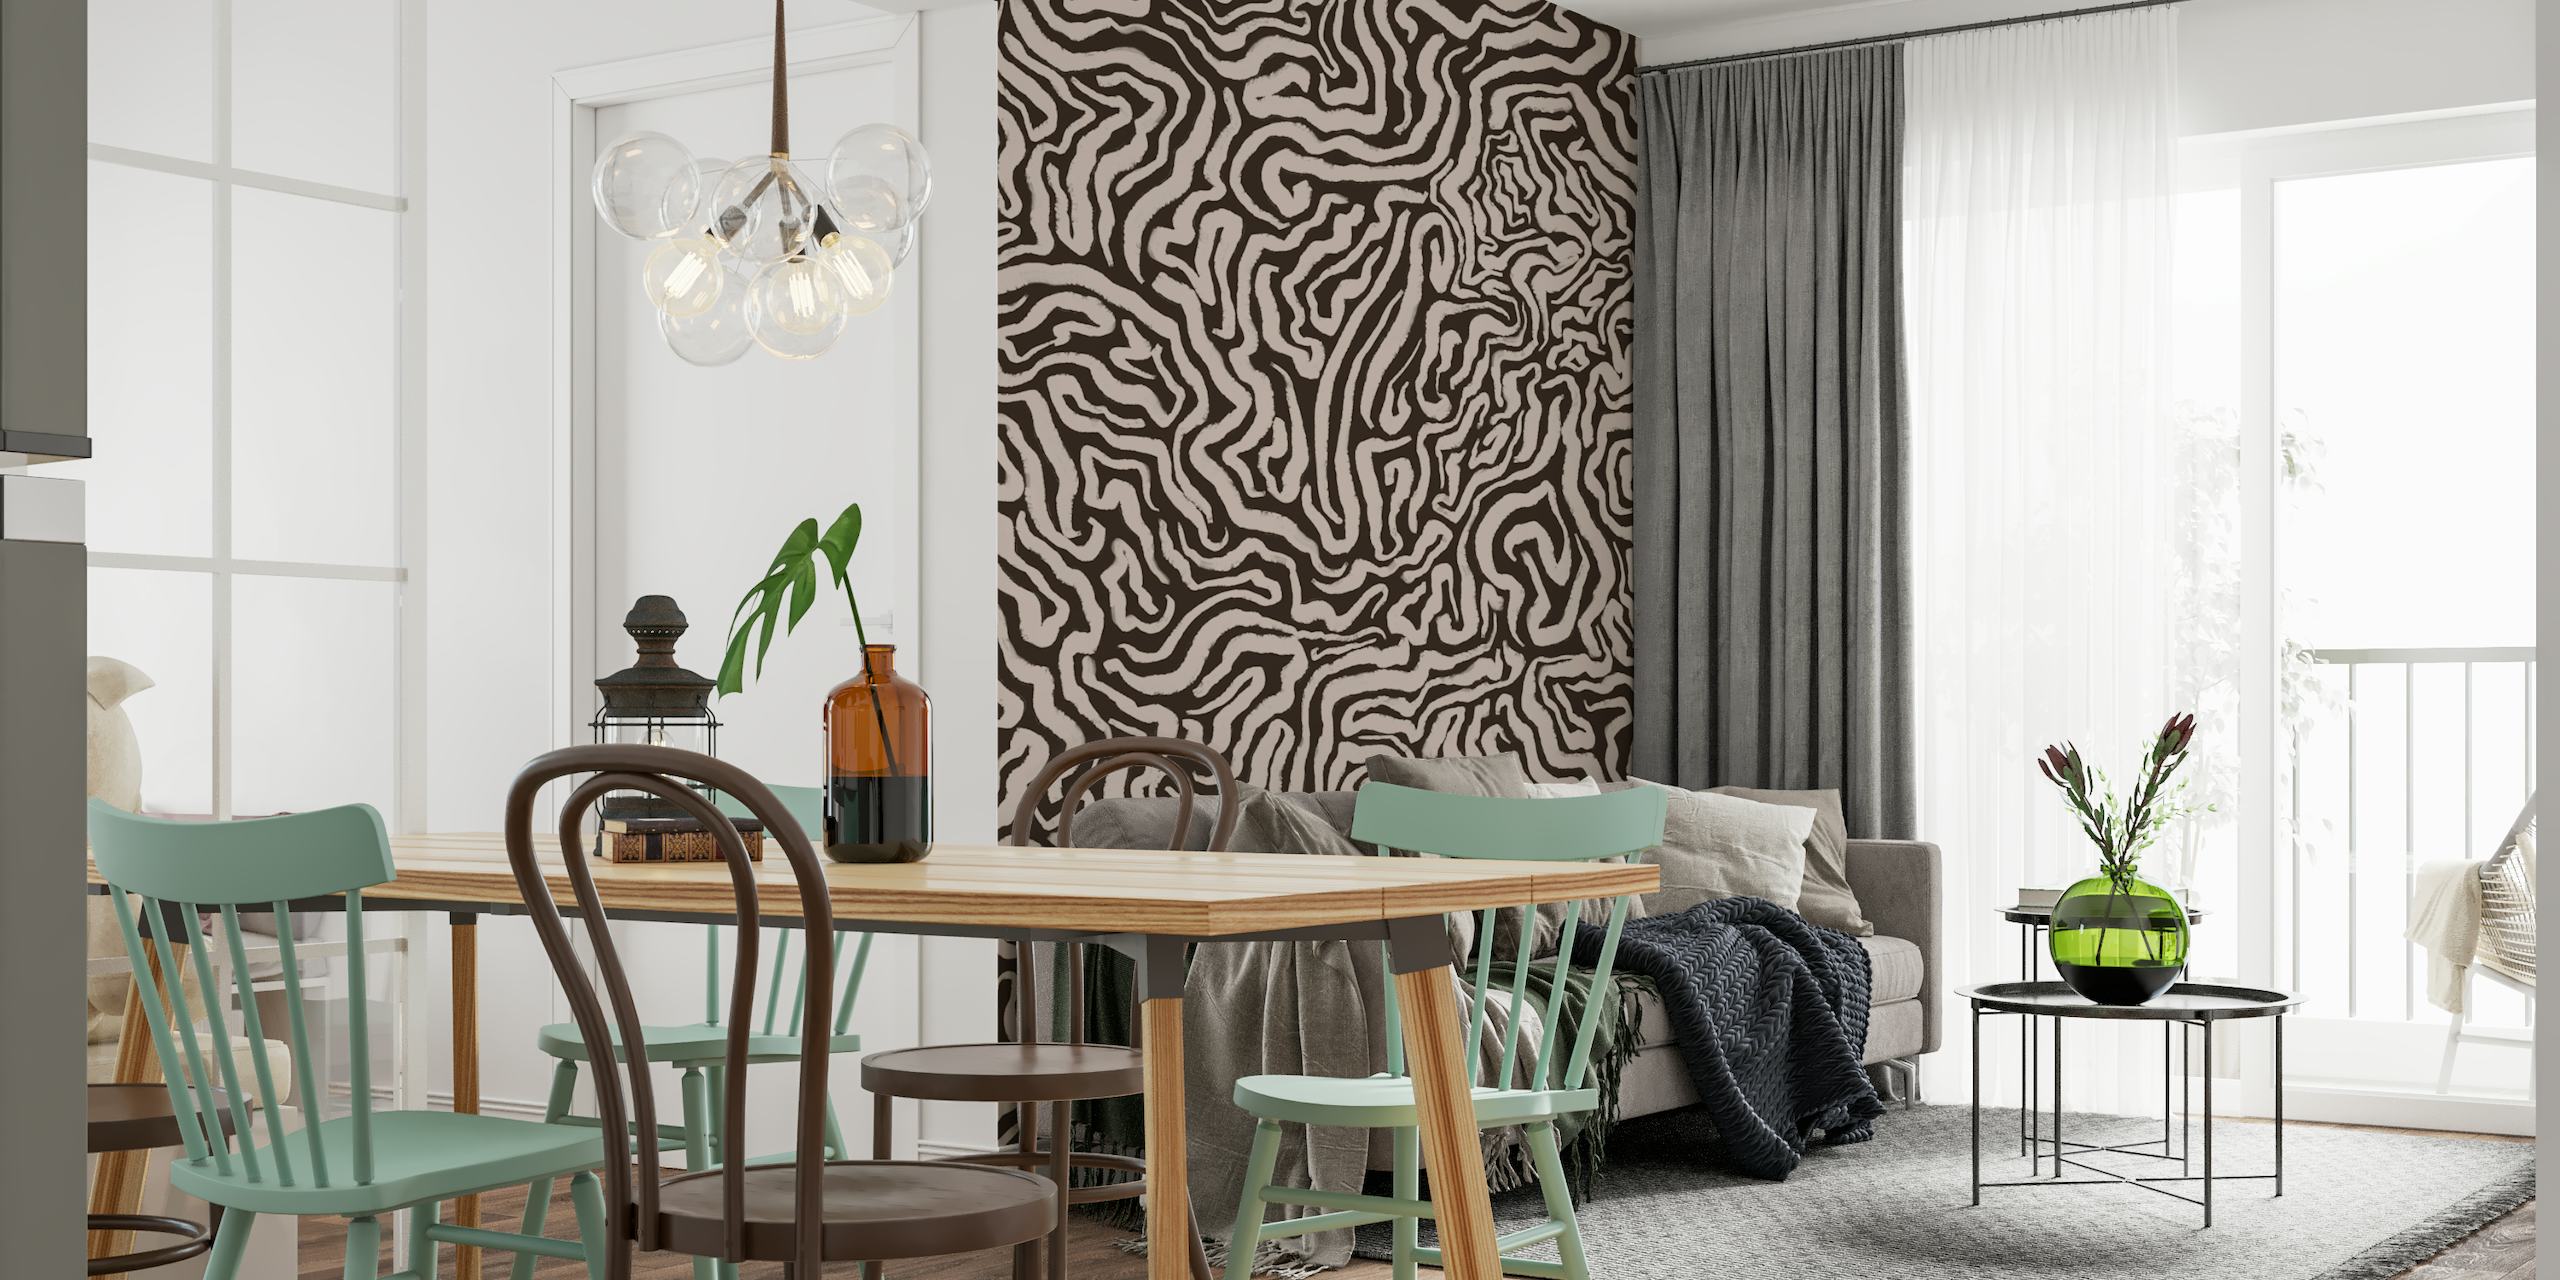 Fotomural de pared con trazos beige retorcidos abstractos para una decoración interior moderna